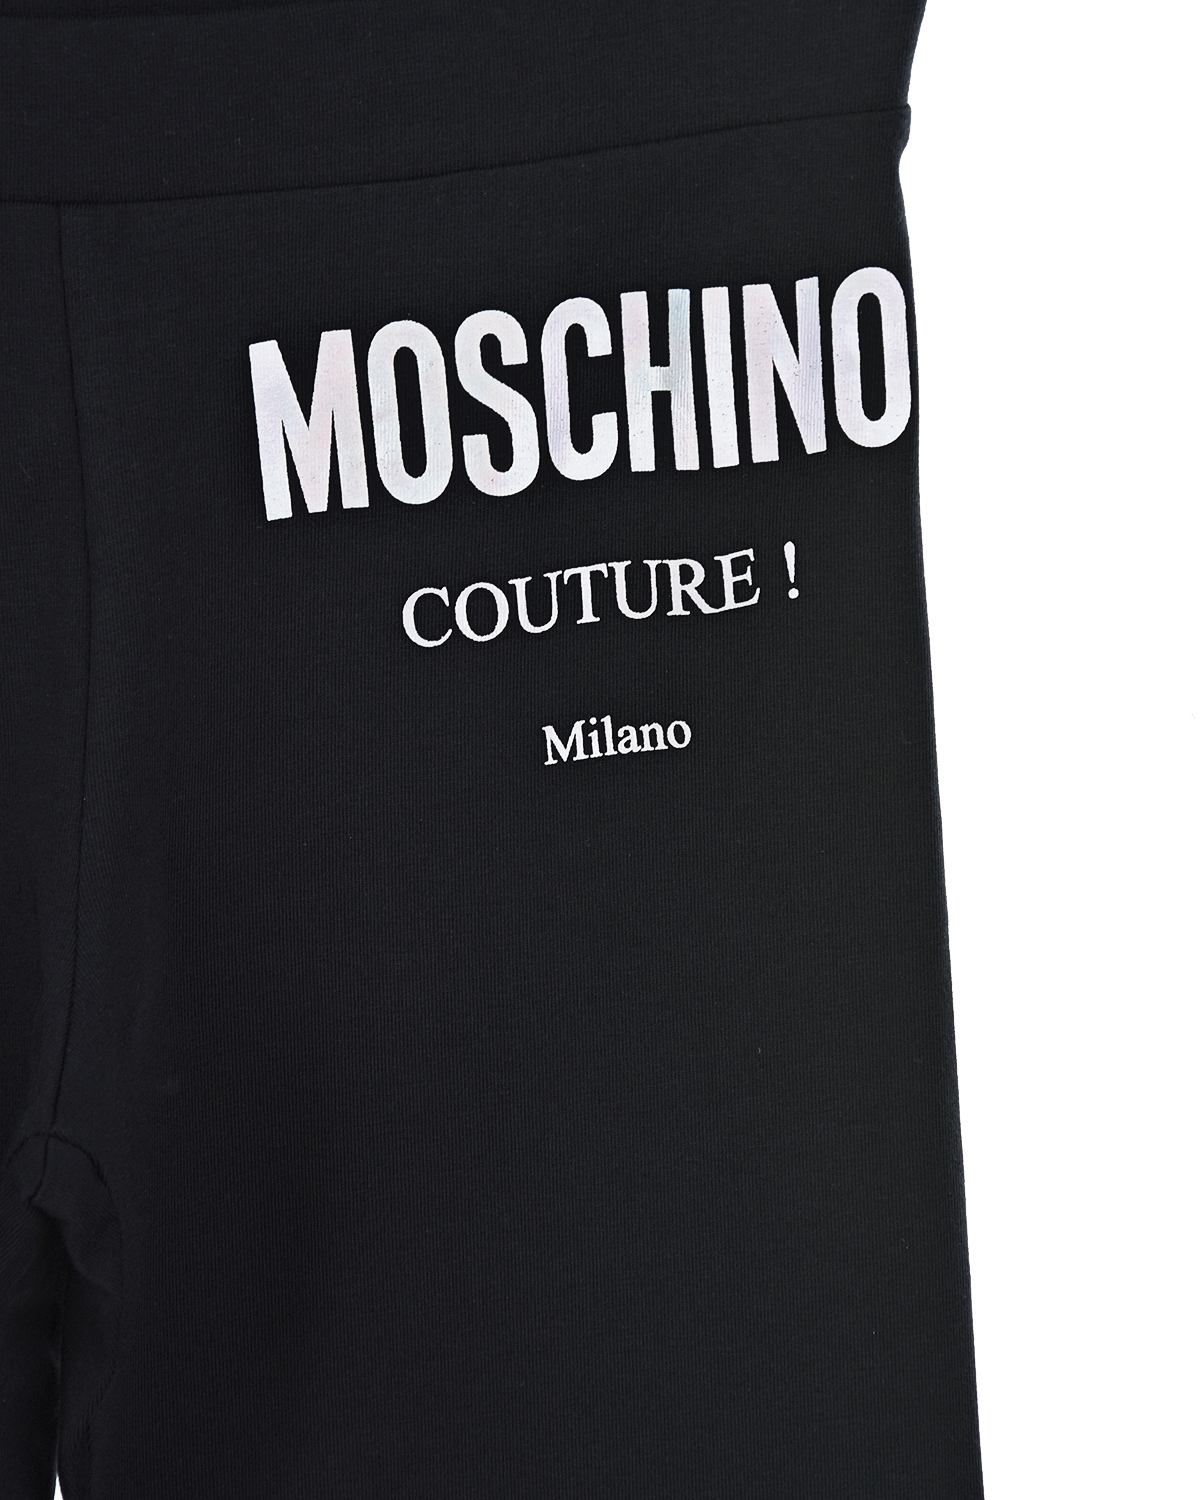 Черные леггинсы с принтом "Moschino couture" детские, размер 104, цвет черный - фото 3